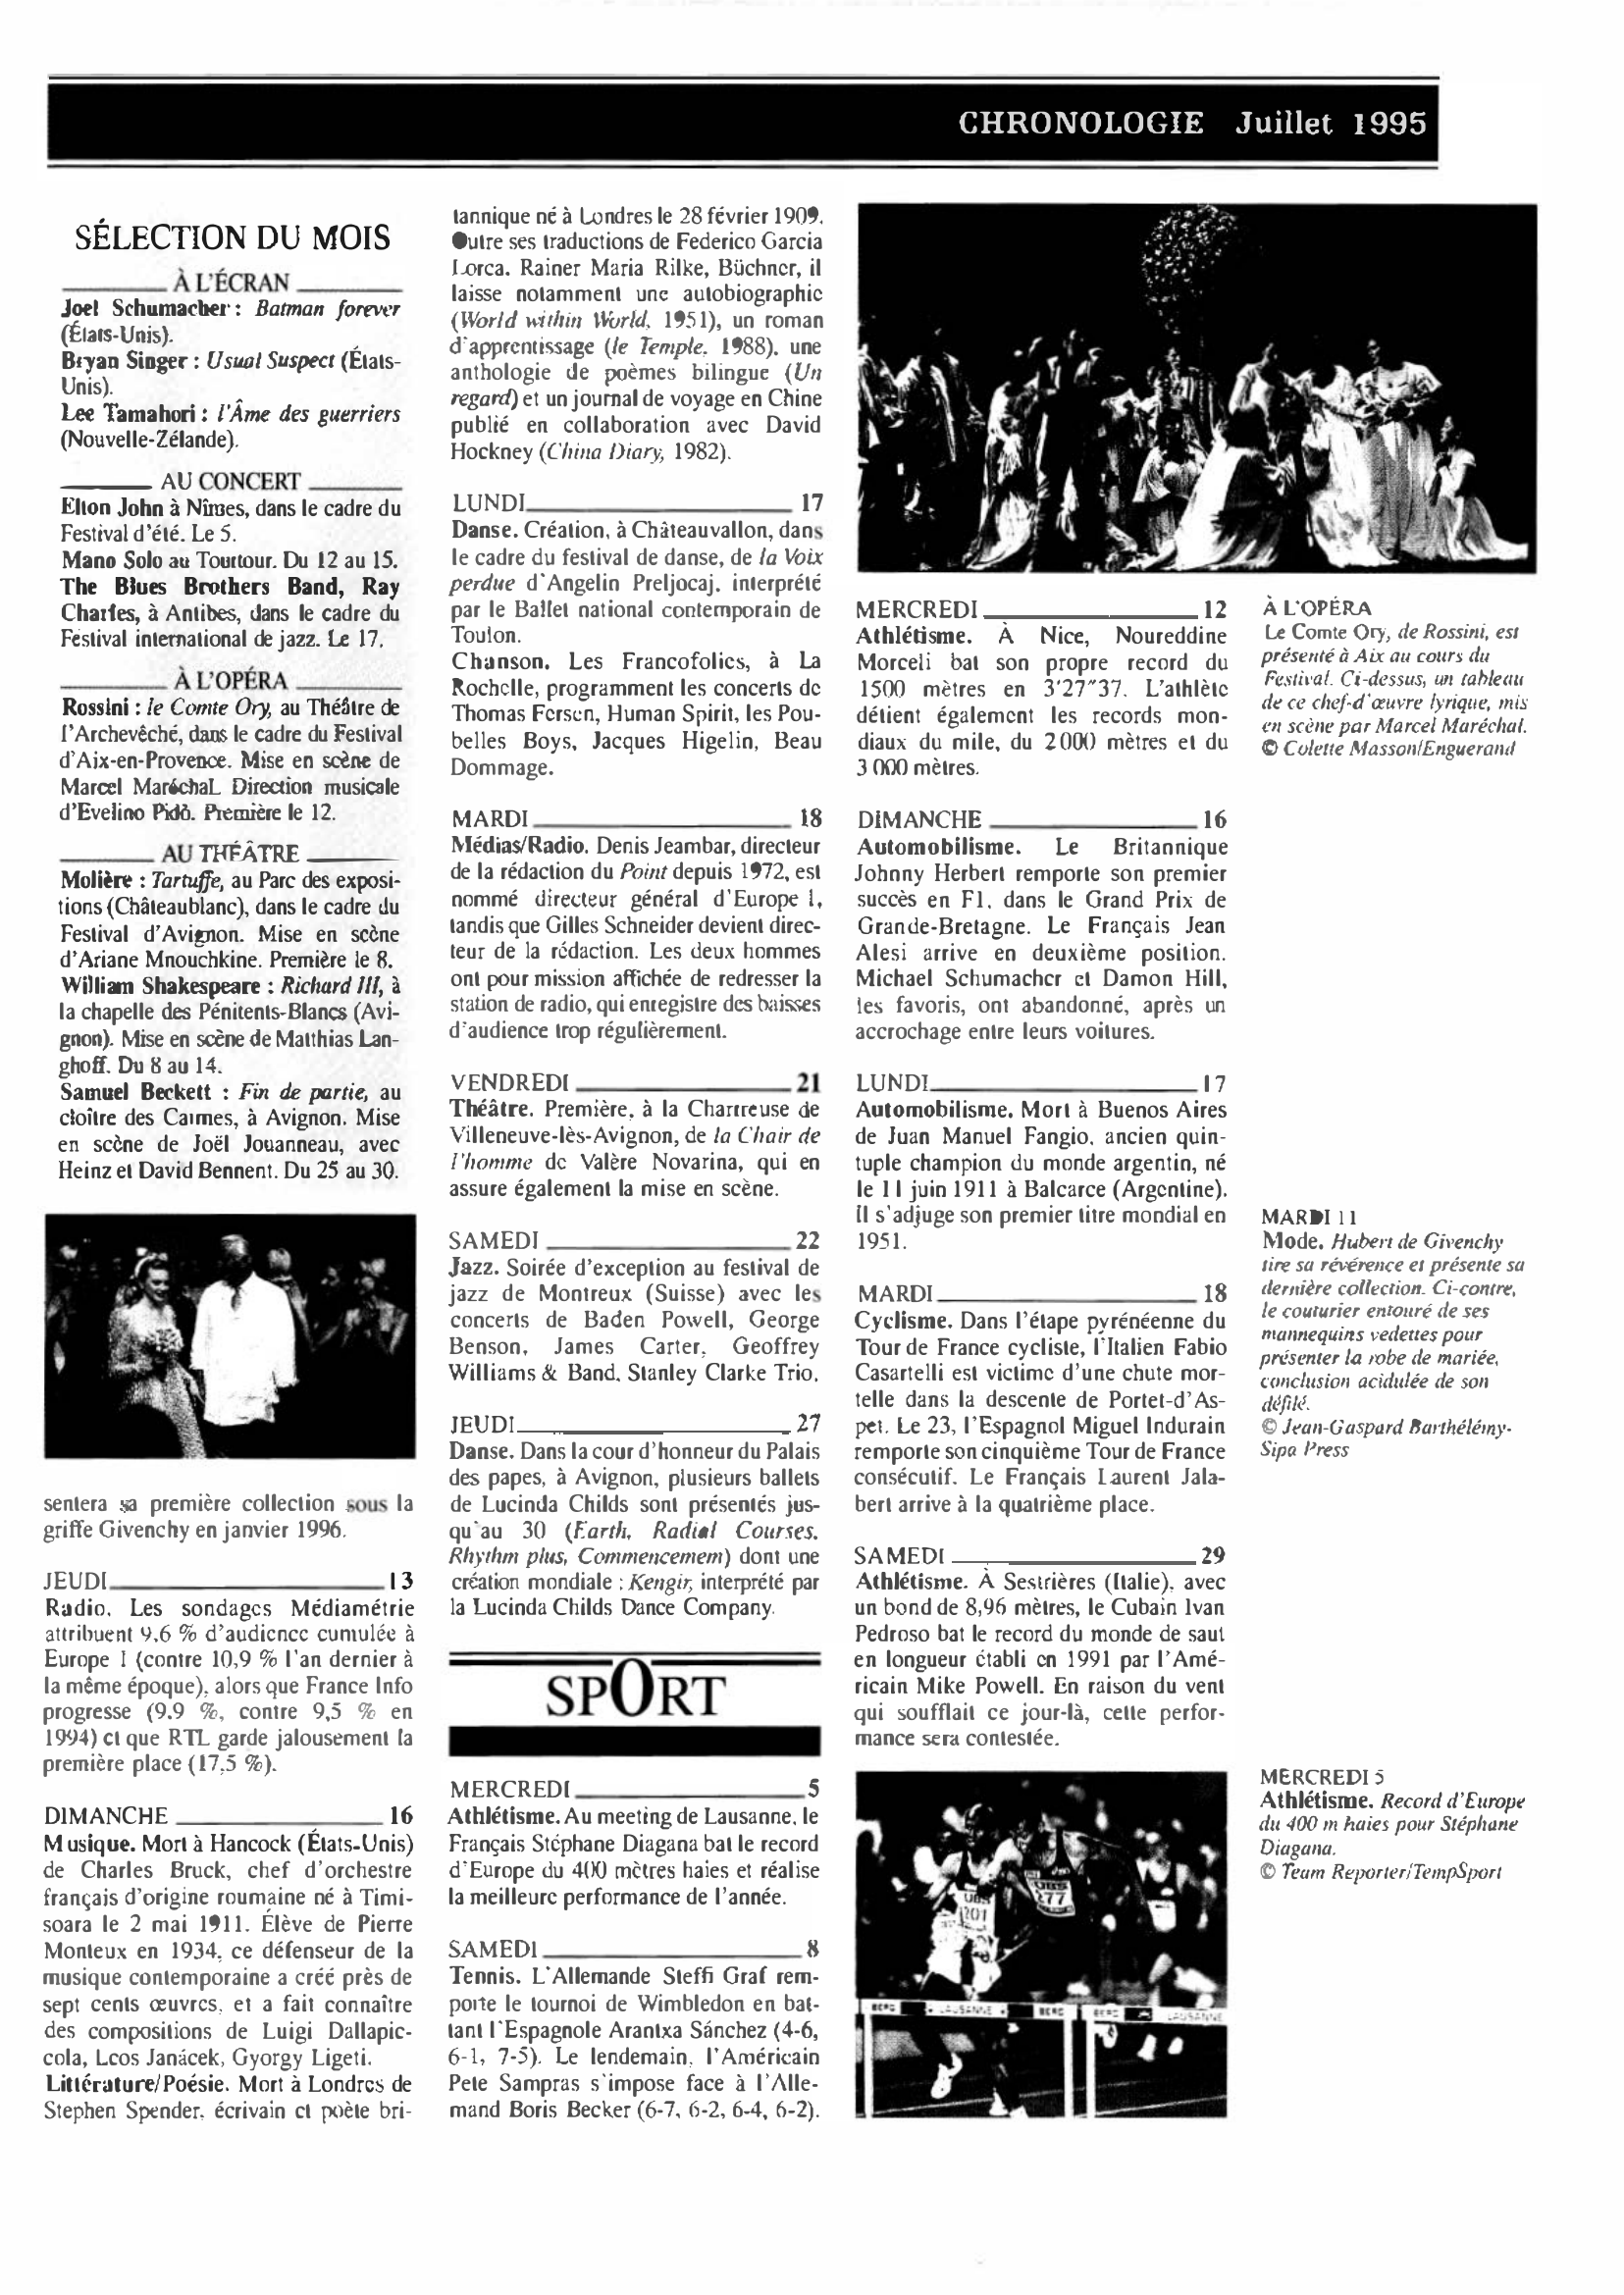 Prévisualisation du document CHRONOLOGIE Juillet 1995 dans le monde (histoire chronologique)